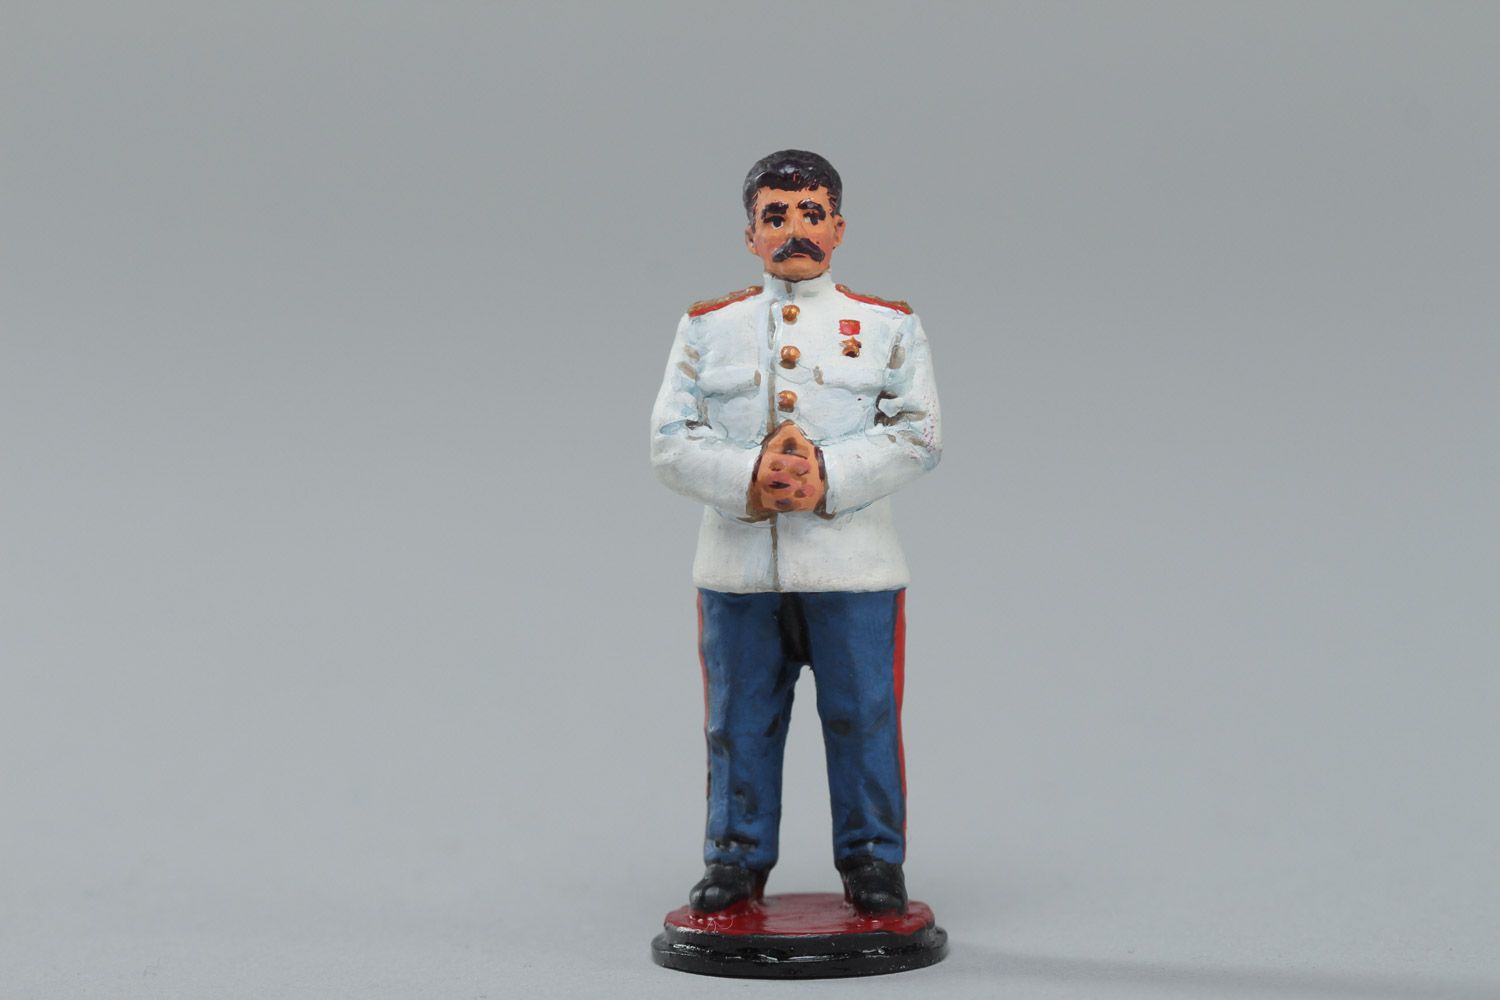 Фигурка Сталина из олова литая расписанная акриловыми красками ручная работа фото 2